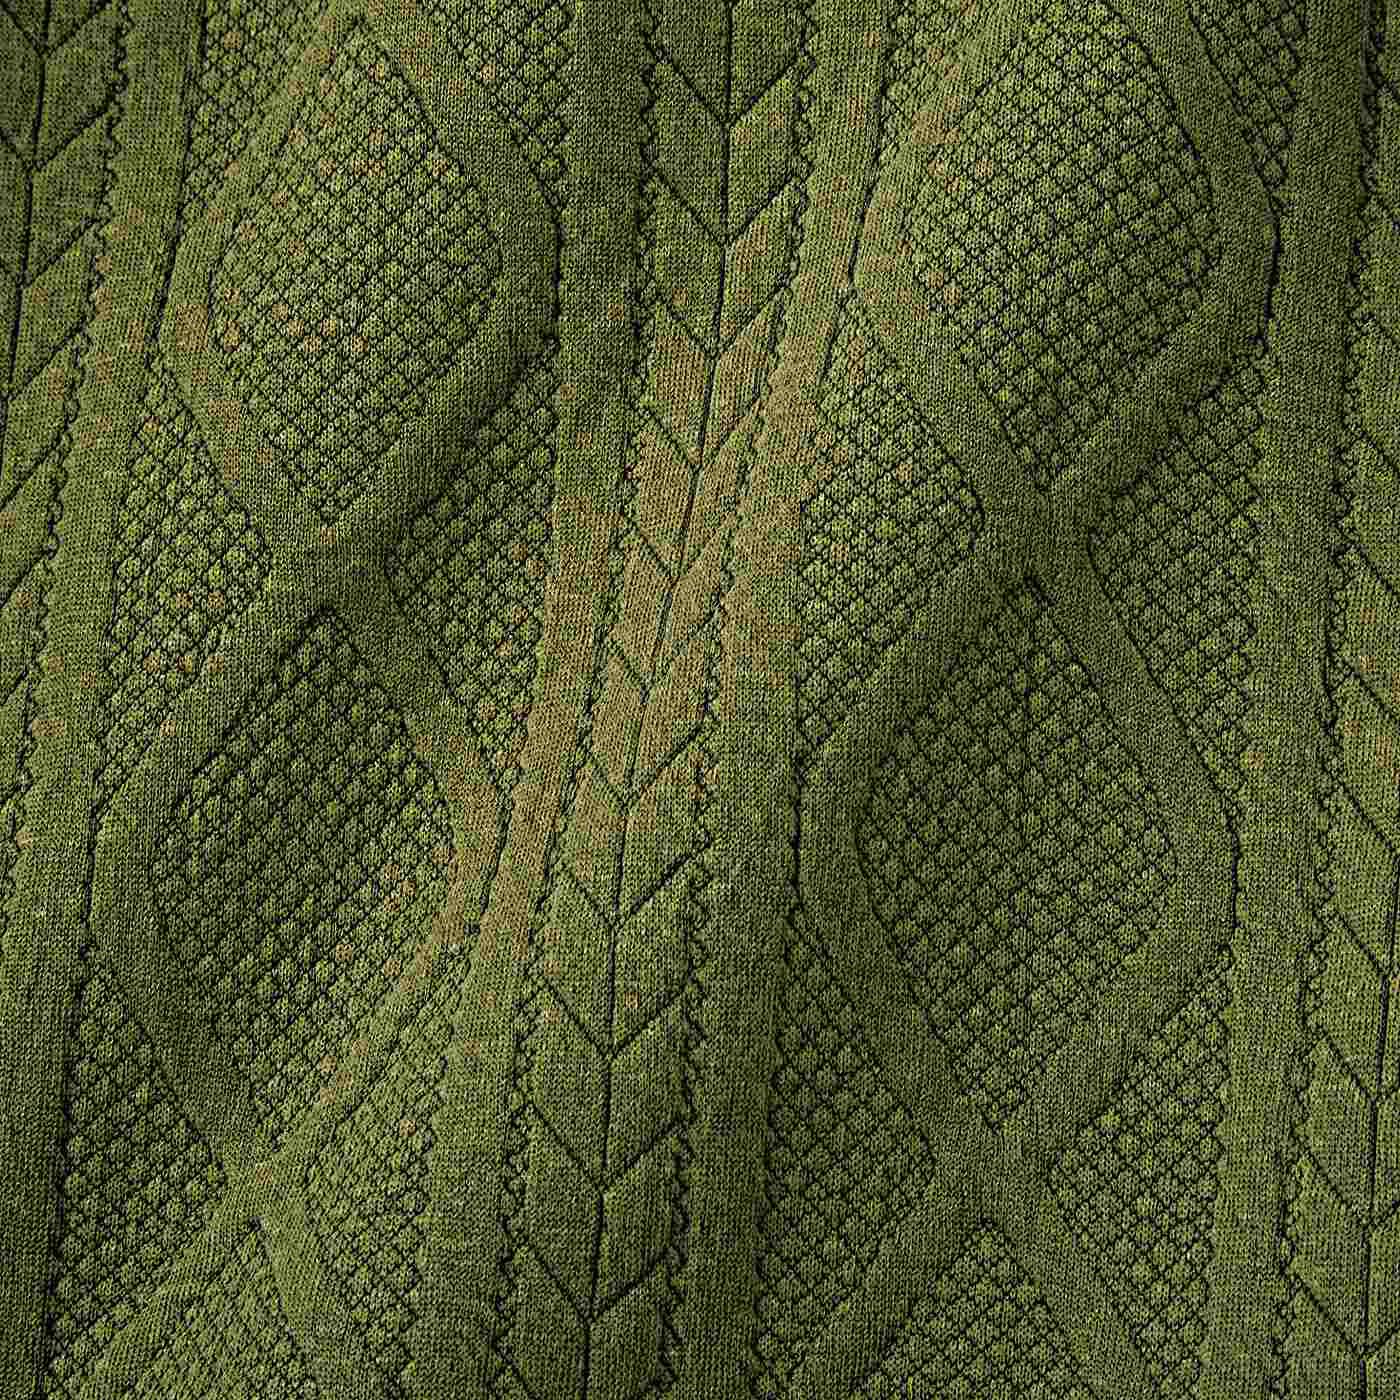 USEDo|USEDo　アラン模様のセーターみたいなざっくり編み柄トレーナーの会|ニットのような編み柄をジャカードで表現したカットソー素材。